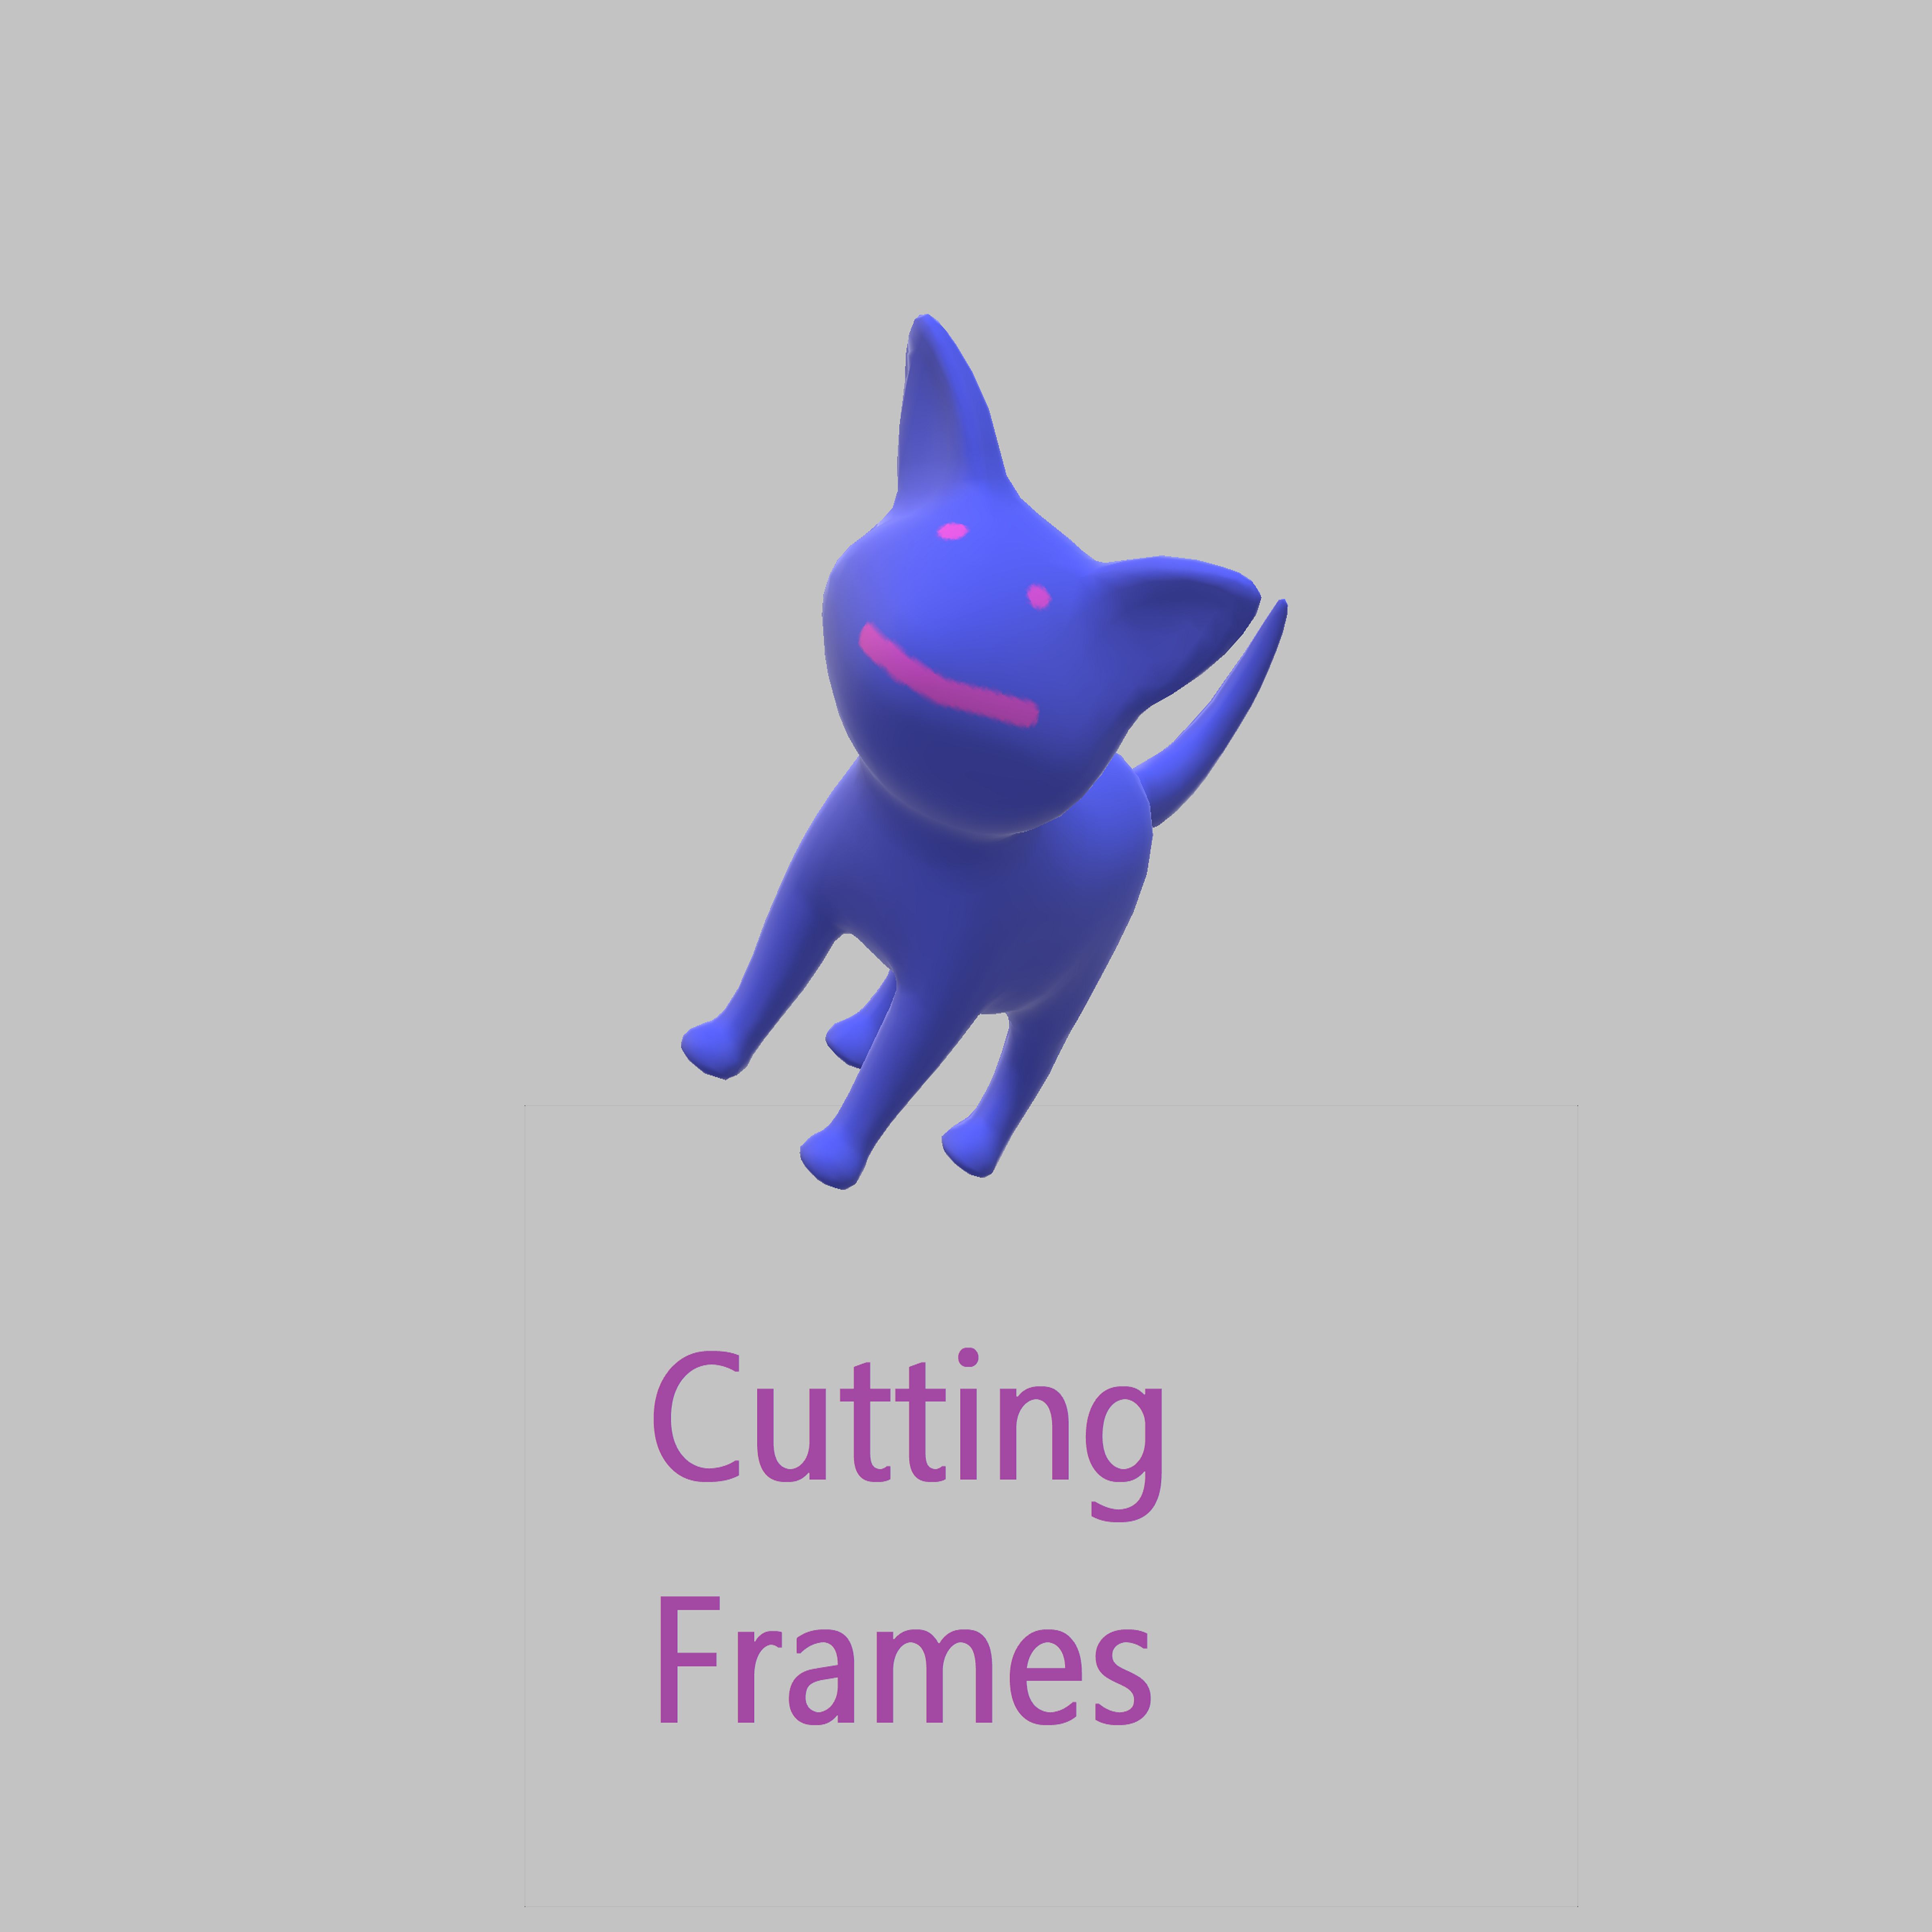 Cutting Frames